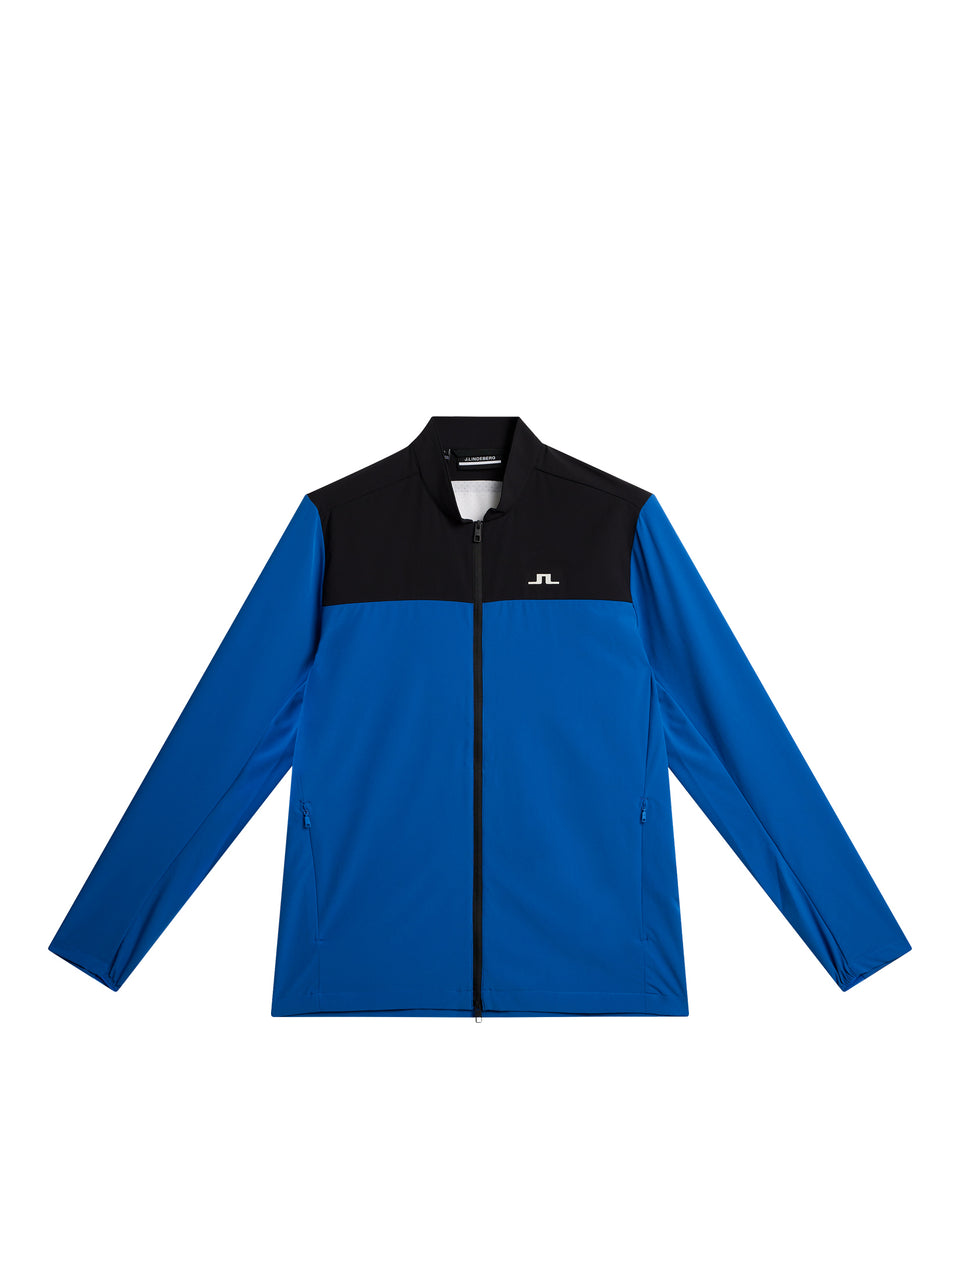 Jeff Hybrid Jacket / Nautical Blue